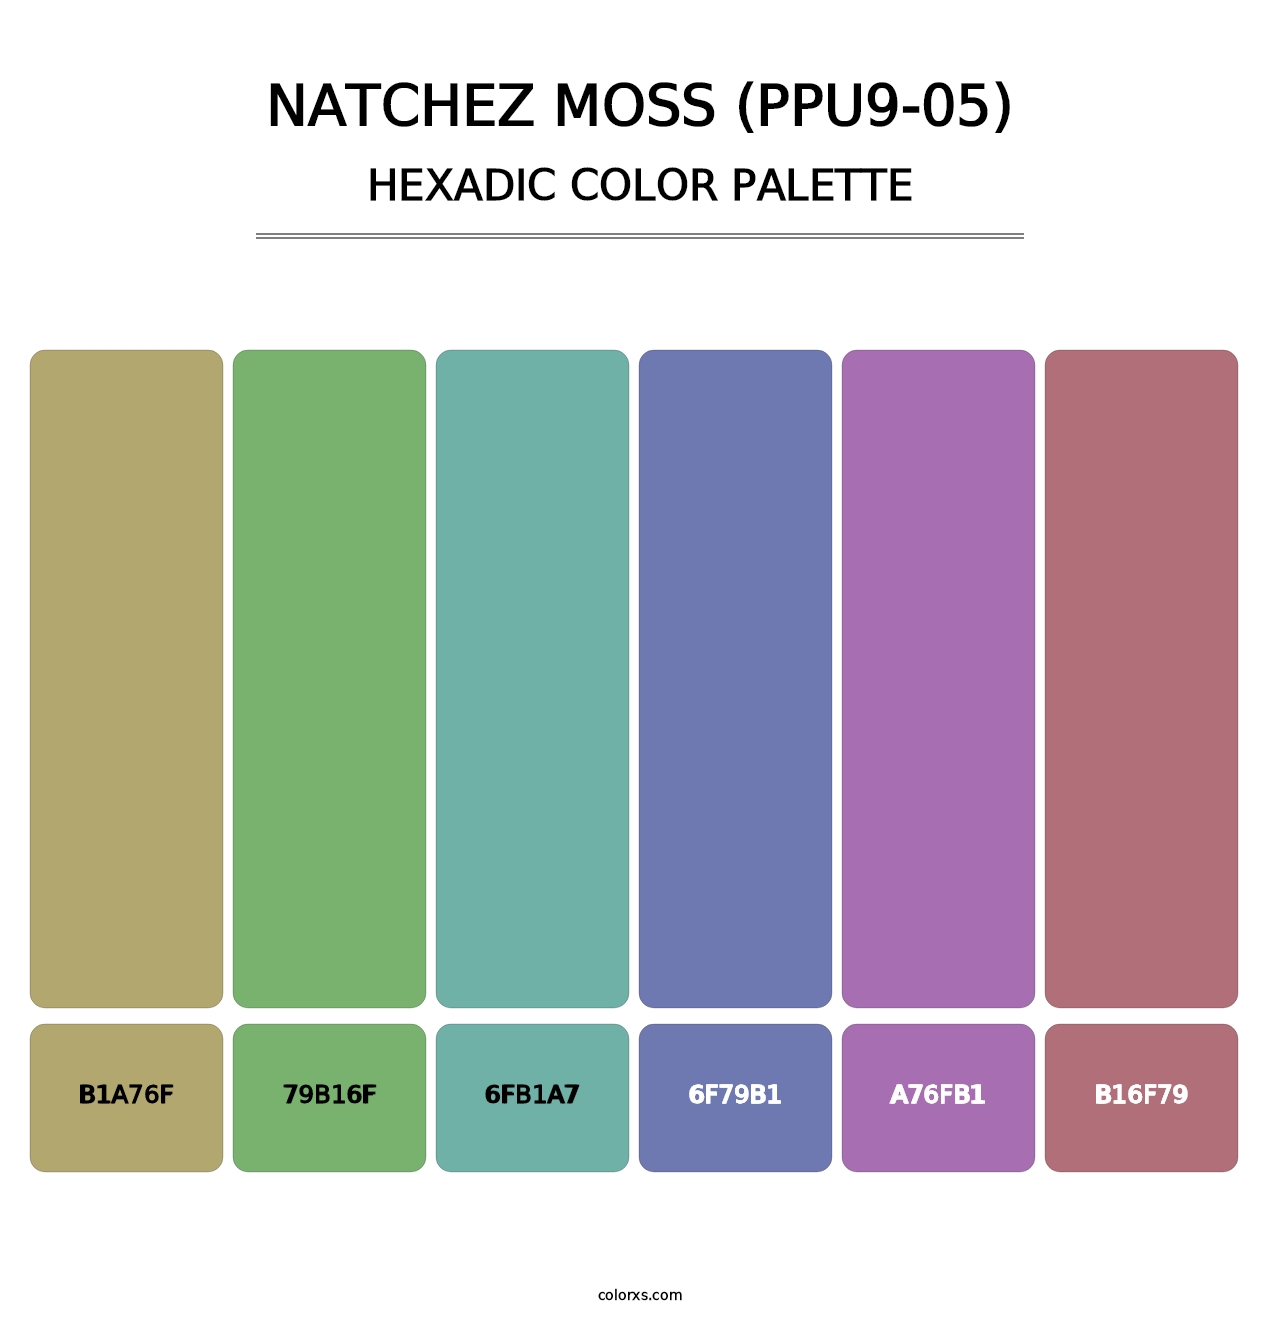 Natchez Moss (PPU9-05) - Hexadic Color Palette